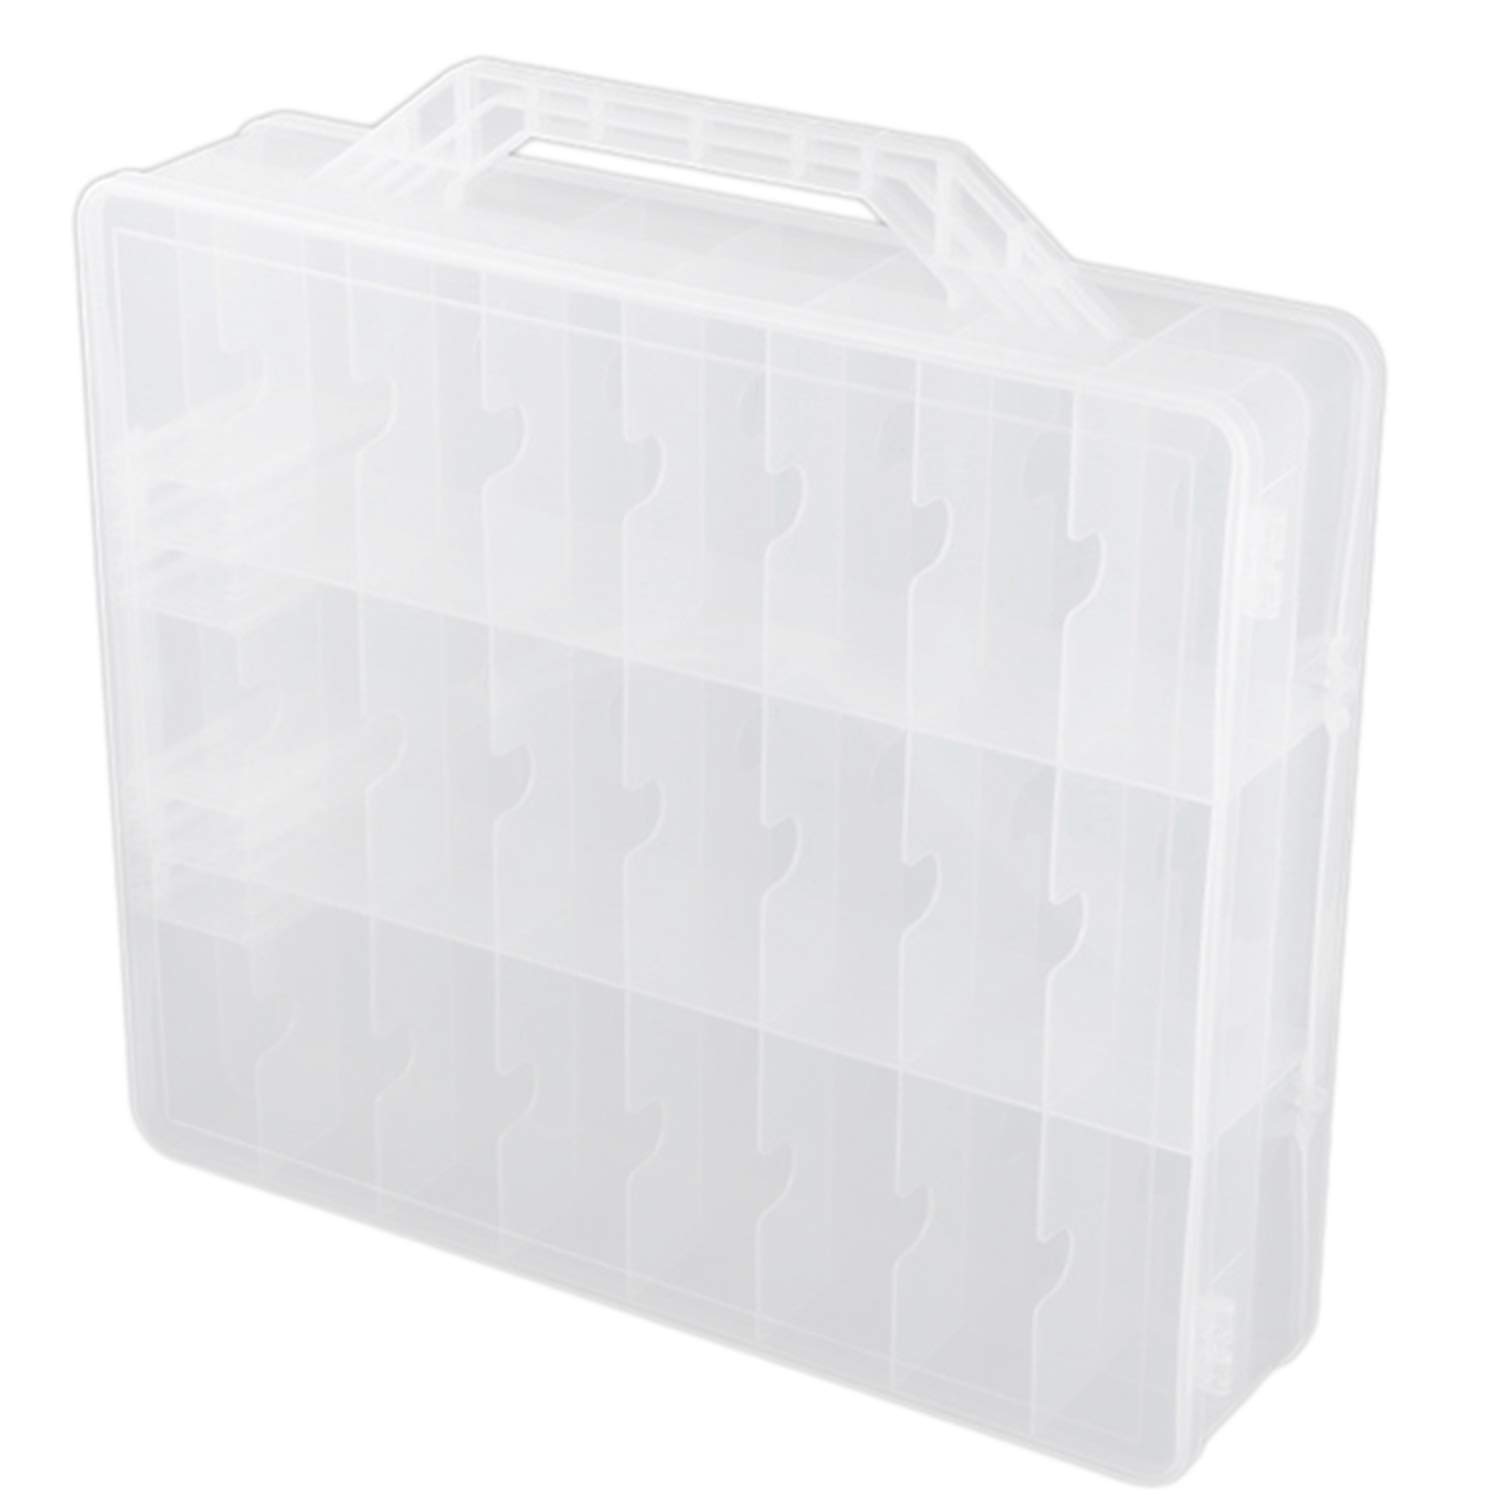 Bumdenuu 48 Zellen 2-Lagiger Nagellack Organizer Portable Clear Nail Supplies Handarbeit Aufbewahrungsbox Verstellbarer Aufbewahrungskoffer